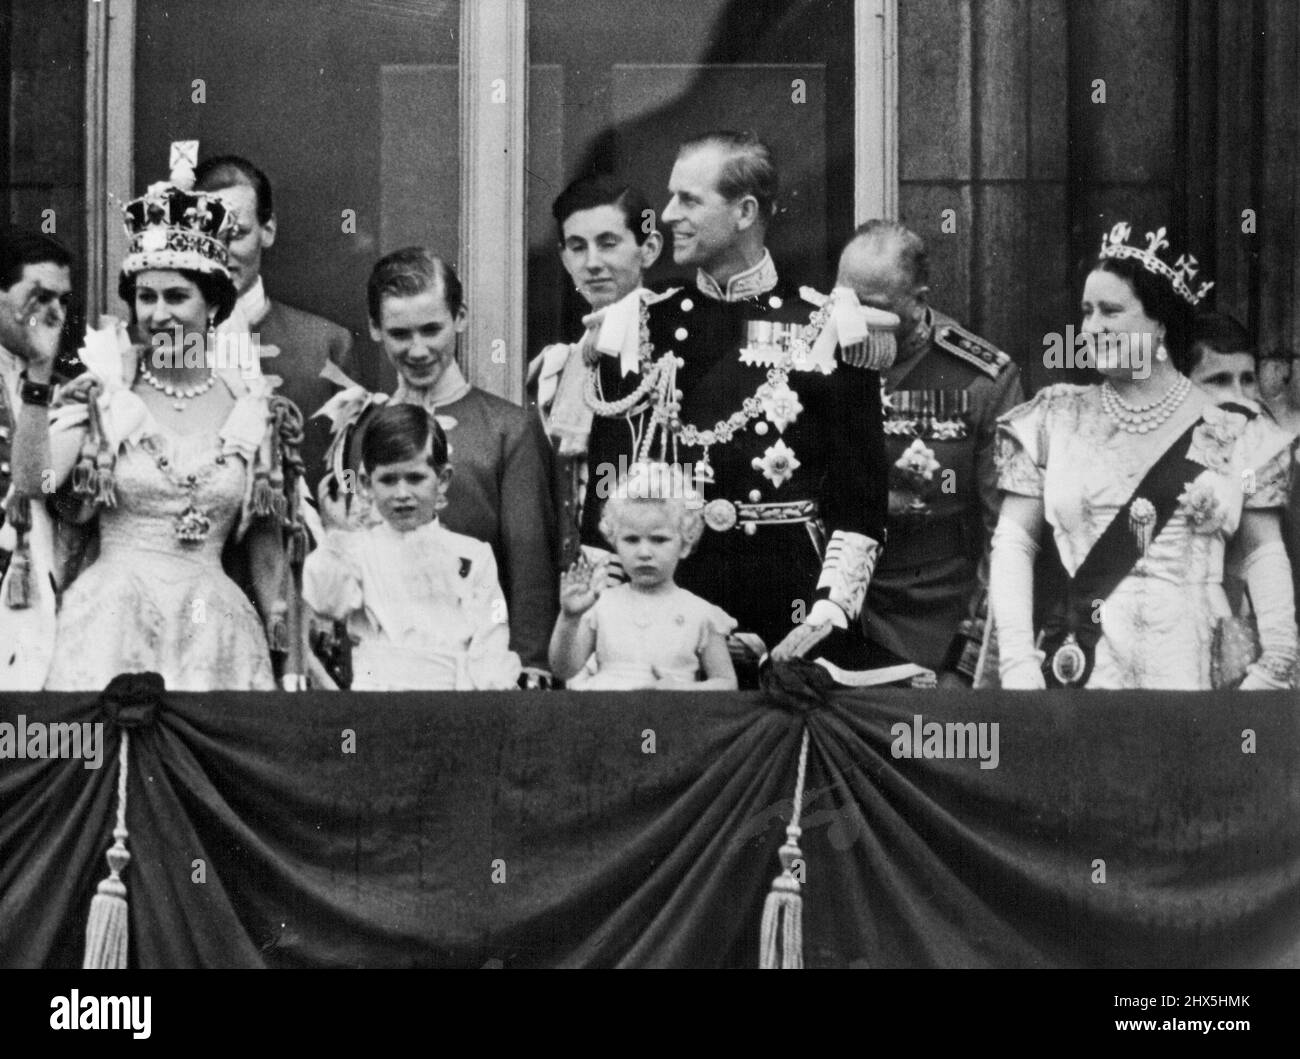 Sua Maestà saluta i suoi soggetti -- alle centinaia di migliaia dei suoi soggetti e molti visitatori stranieri, la sua maestà, ondeggia un saluto amichevole dal balcone del palazzo questa sera.....con la regina può essere visto la regina... Il duca di Edimburgo...la principessa Margaret... Il duca di Gloucester... il principe Carlo e la principessa Anne. Lo stesso posto, un tempo diverso.. Un flashback a 1953 quando la famiglia reale si è levata in piedi sullo stesso balcone dopo l'incoronazione. Giugno 02, 1953. (Foto di Paul Popper) Foto Stock